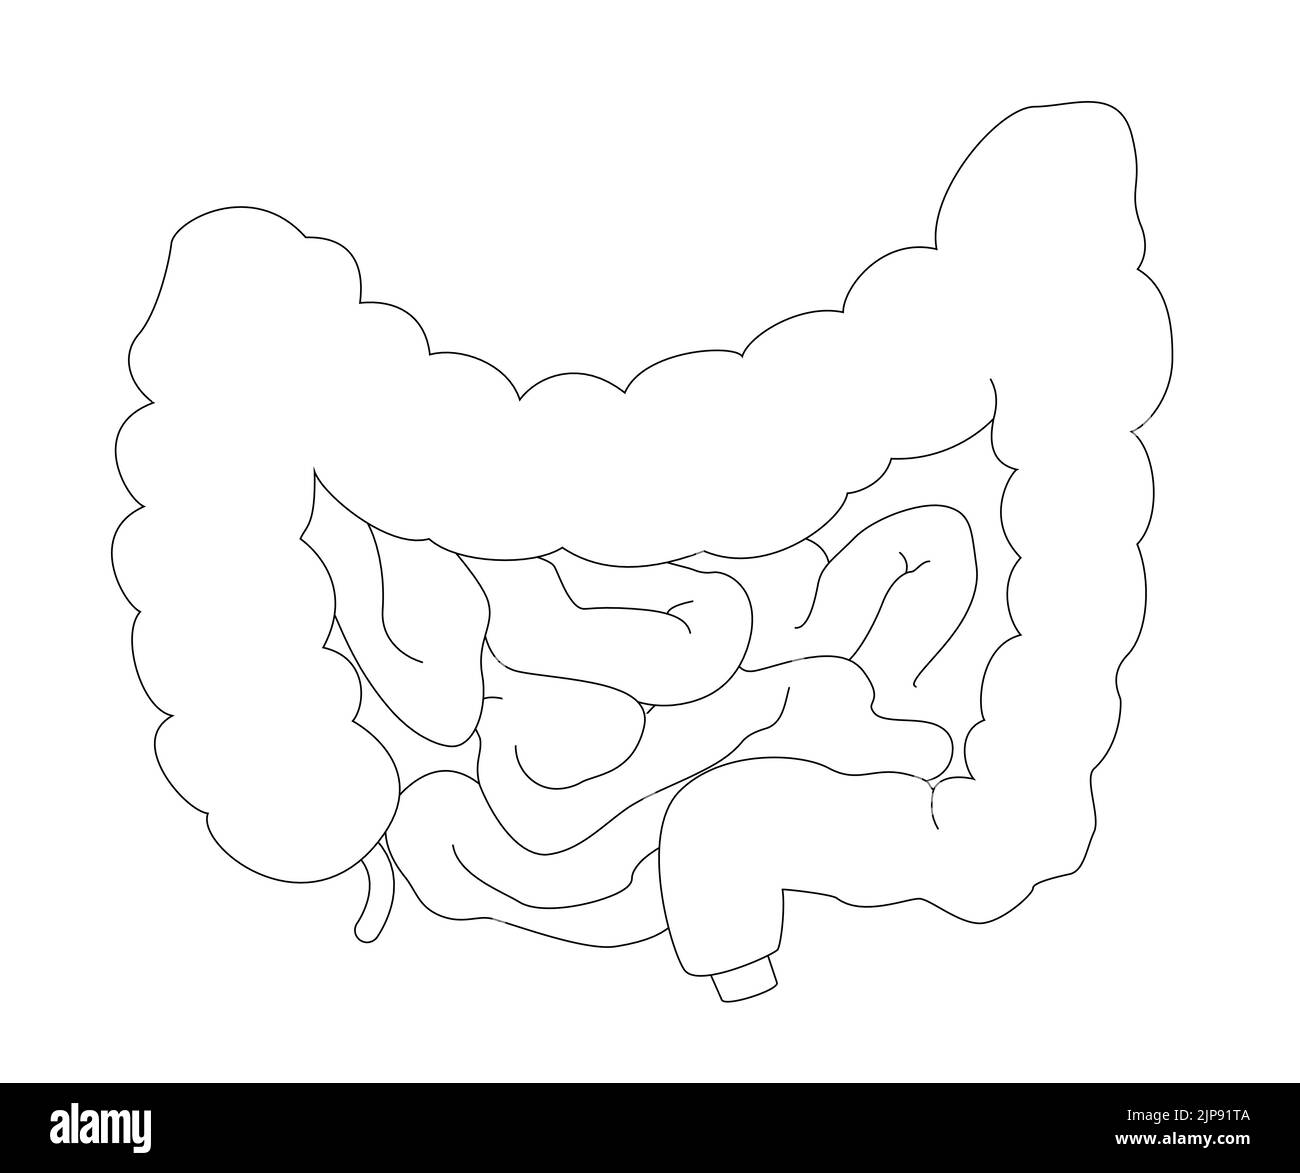 Diagramme médical de l'intestin dans un style réaliste avec des ombres et des reflets. Concept d'anatomie humaine pour une utilisation pédagogique ou pharmaceutique Illustration de Vecteur